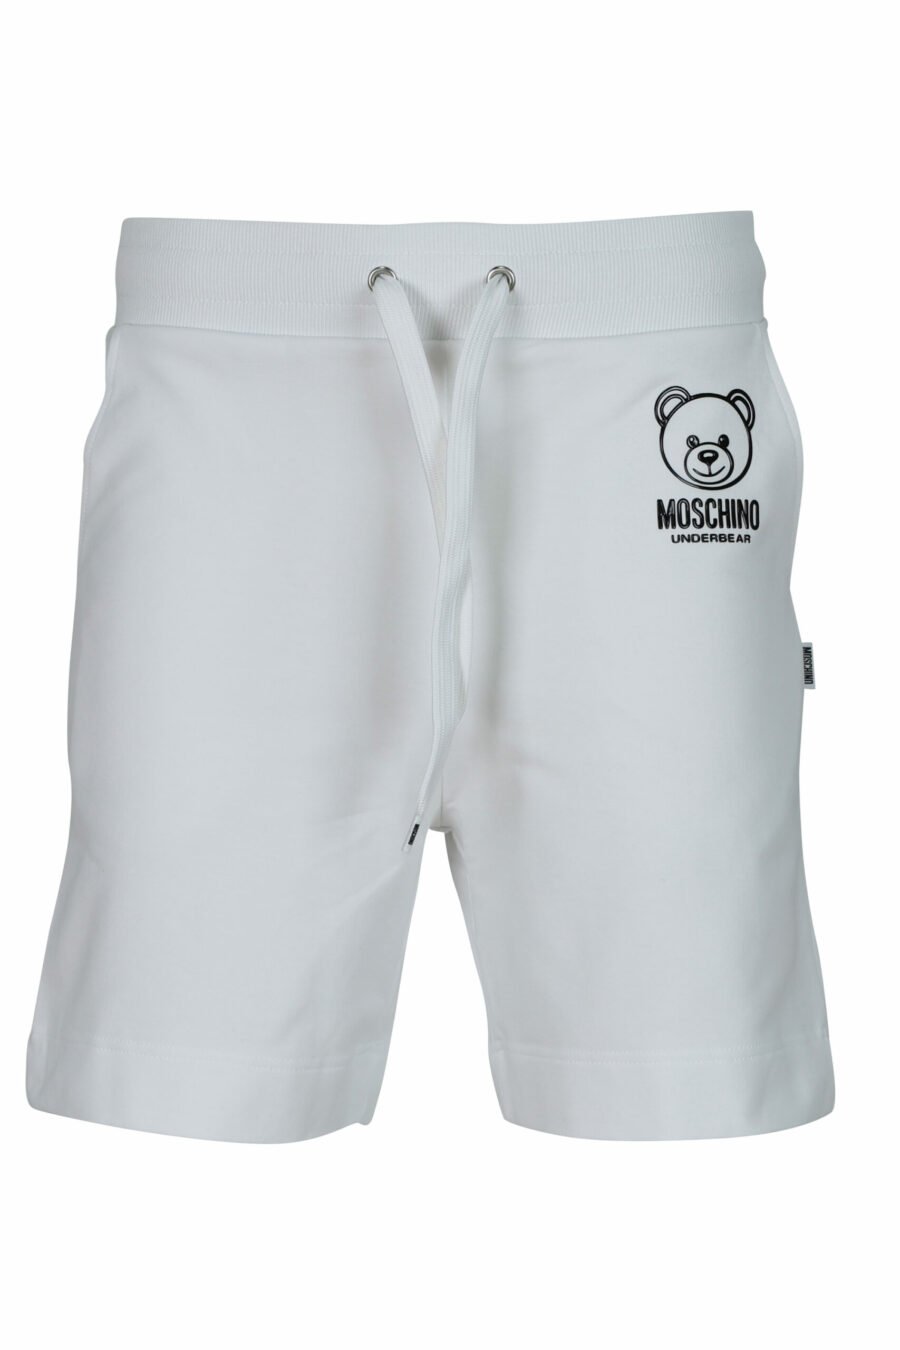 Pantalón de chándal corto blanco con minilogo oso "underbear" en goma negro - 667113622149 scaled